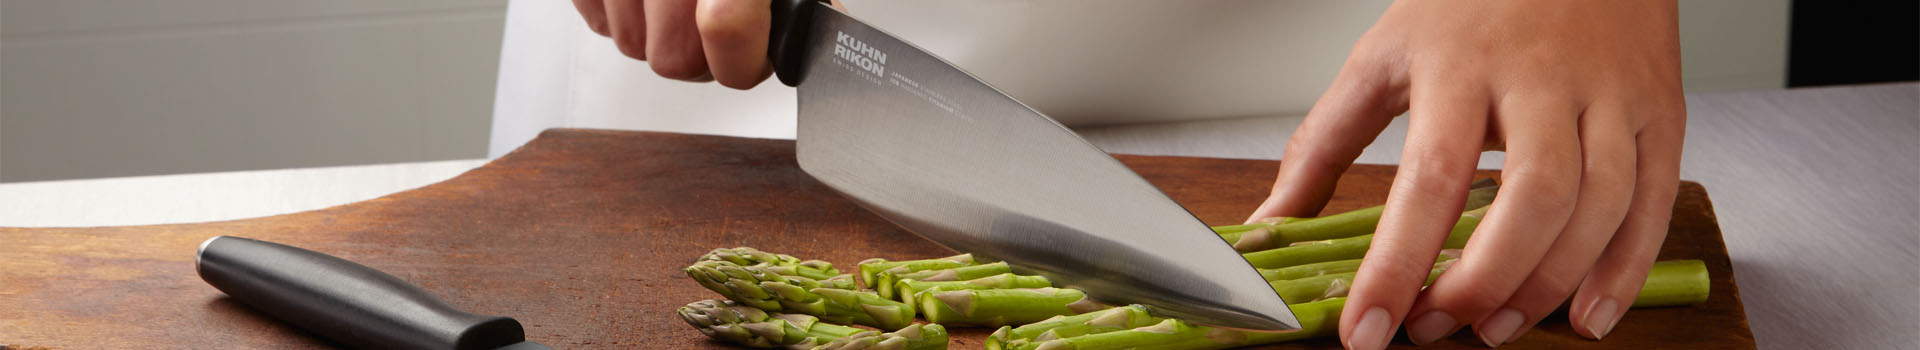 Kitchen Knives